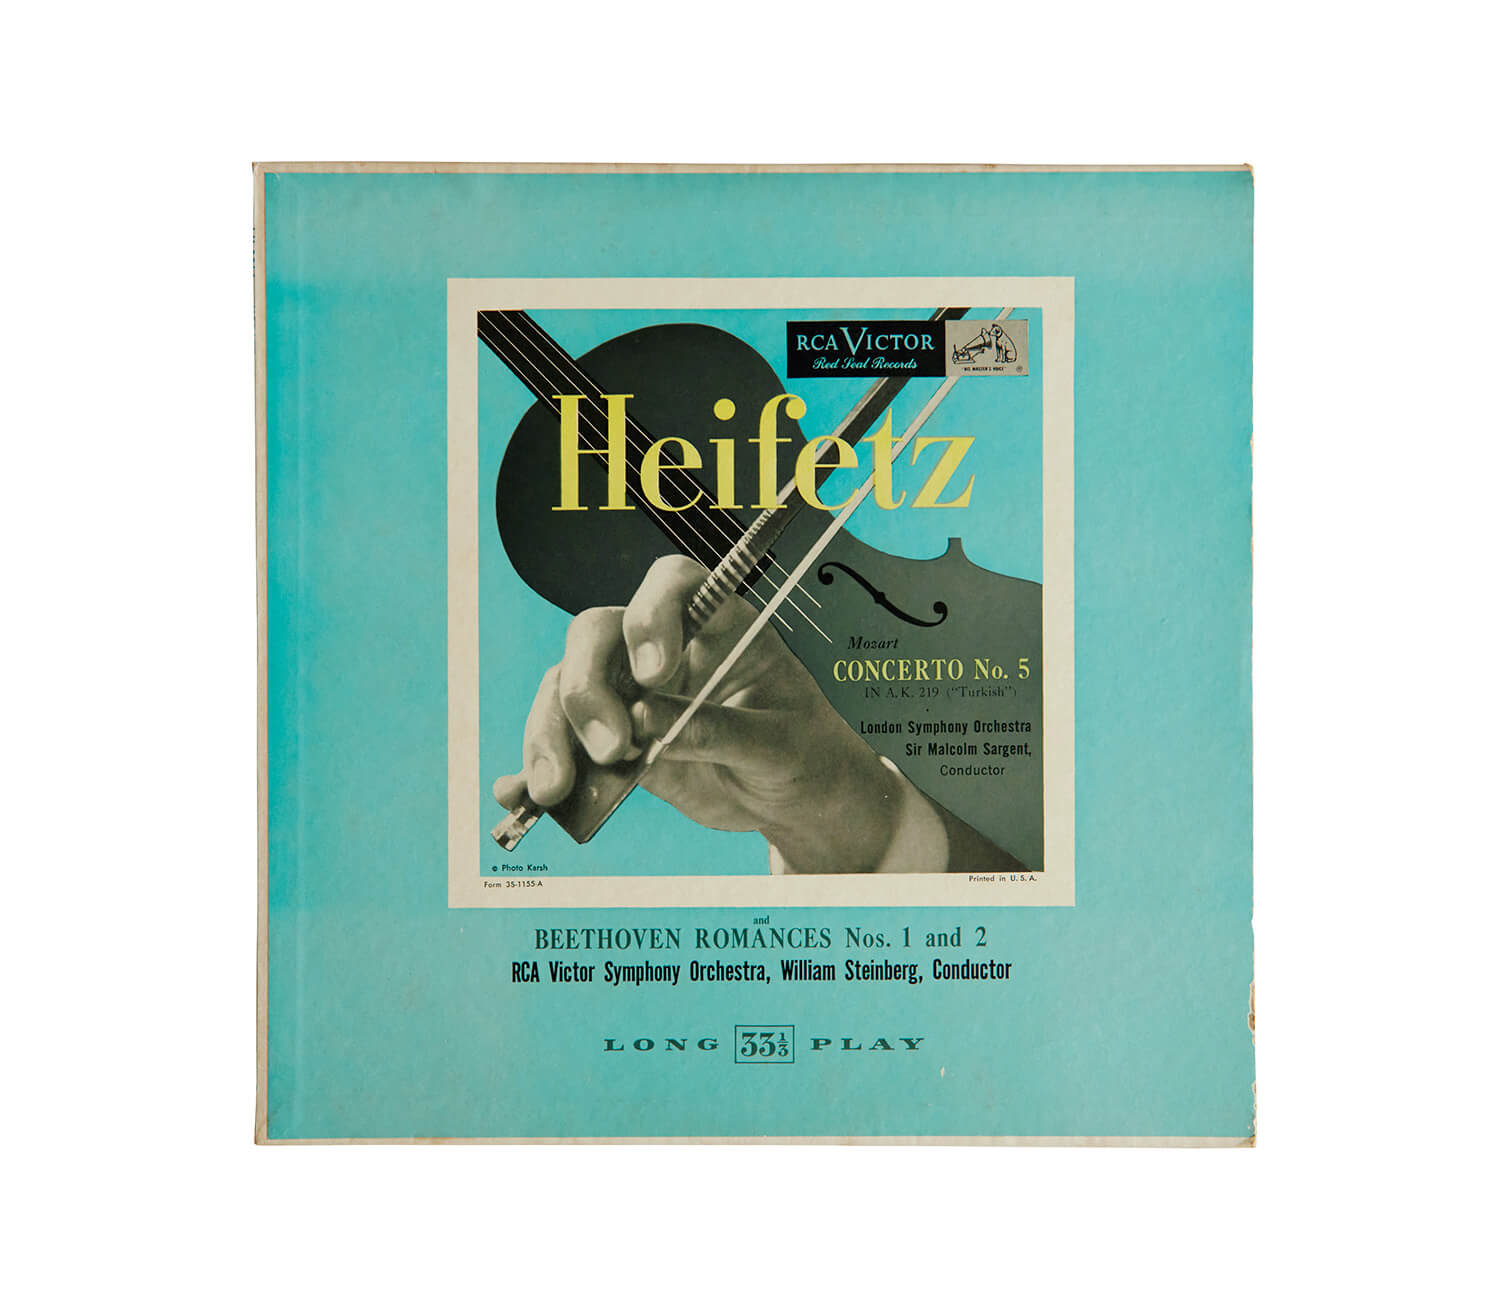 ヤシャ・ハイフェッツが演奏した、モーツァルト「ヴァイオリン協奏曲第5番 イ長調」レコードジャケット